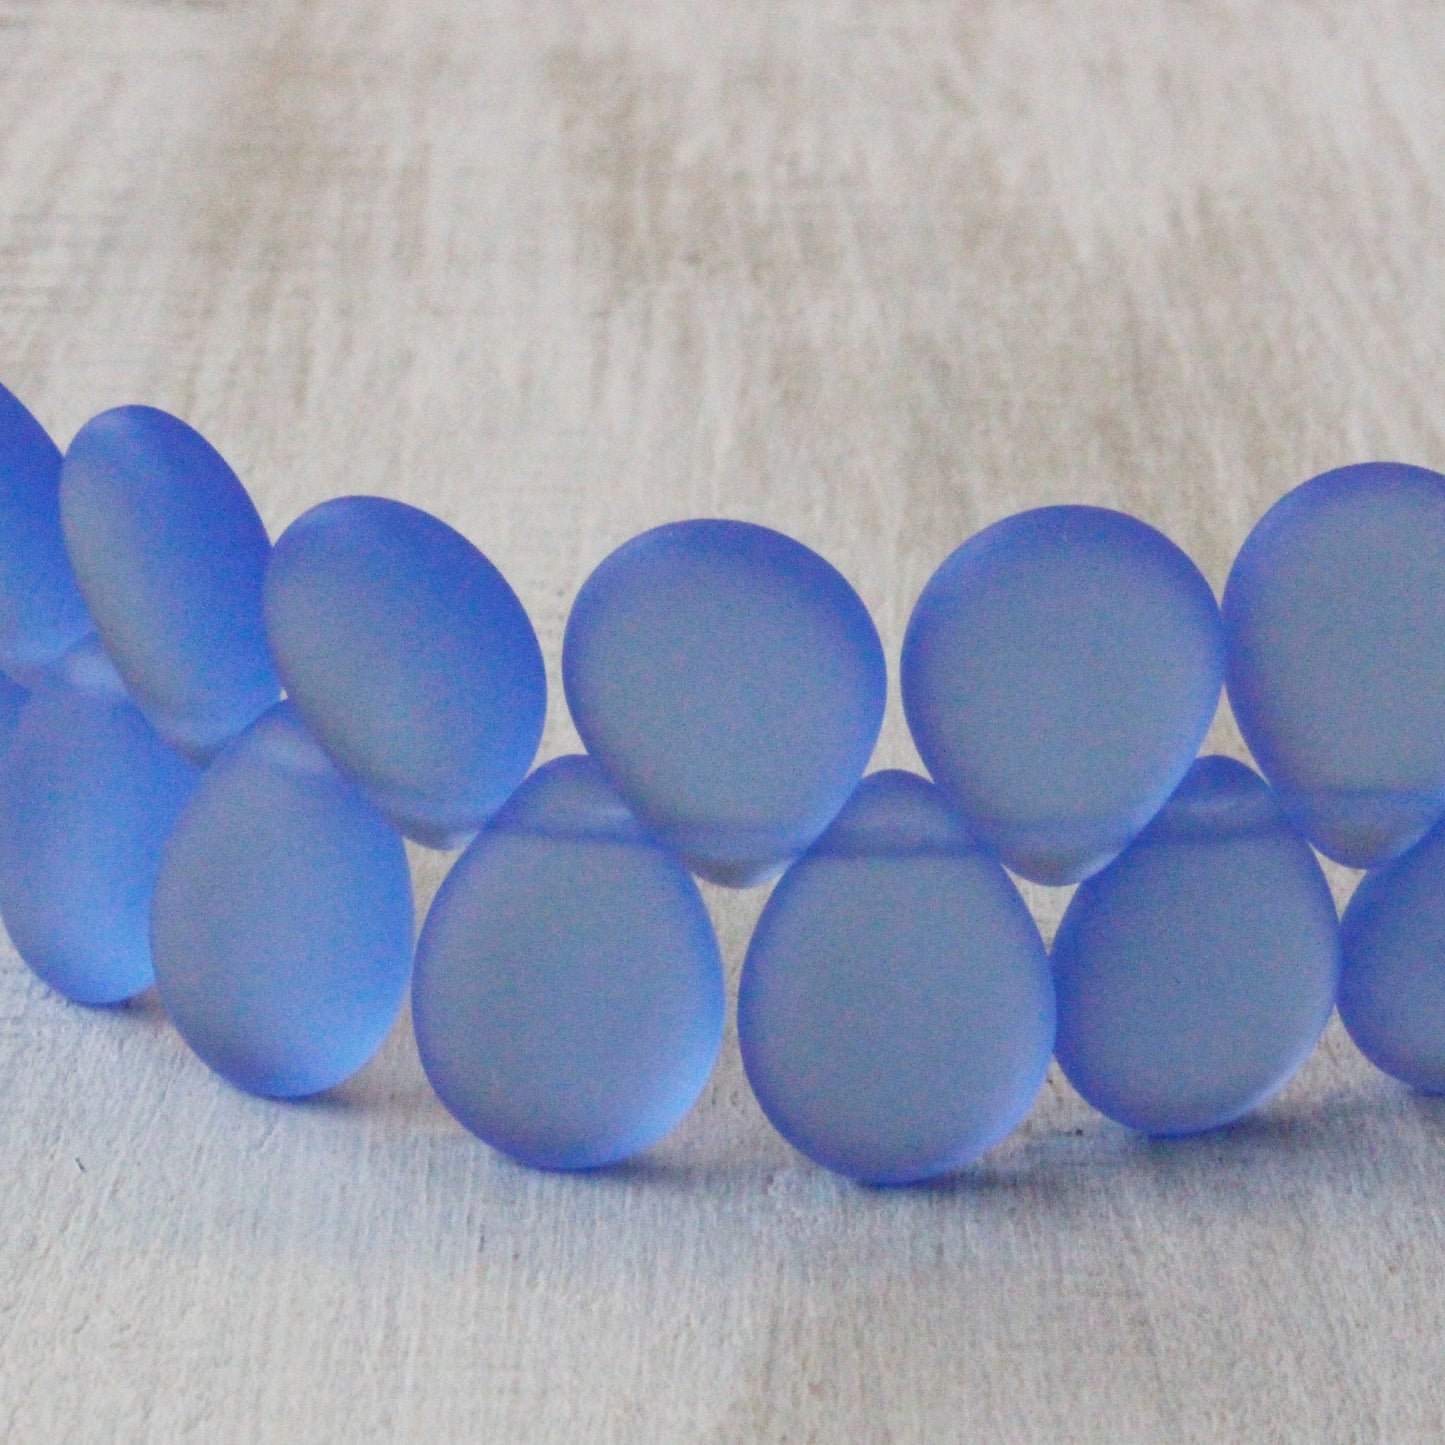 12x16mm Flat Glass Teardrop Beads - Sapphire Matte - 20 Beads